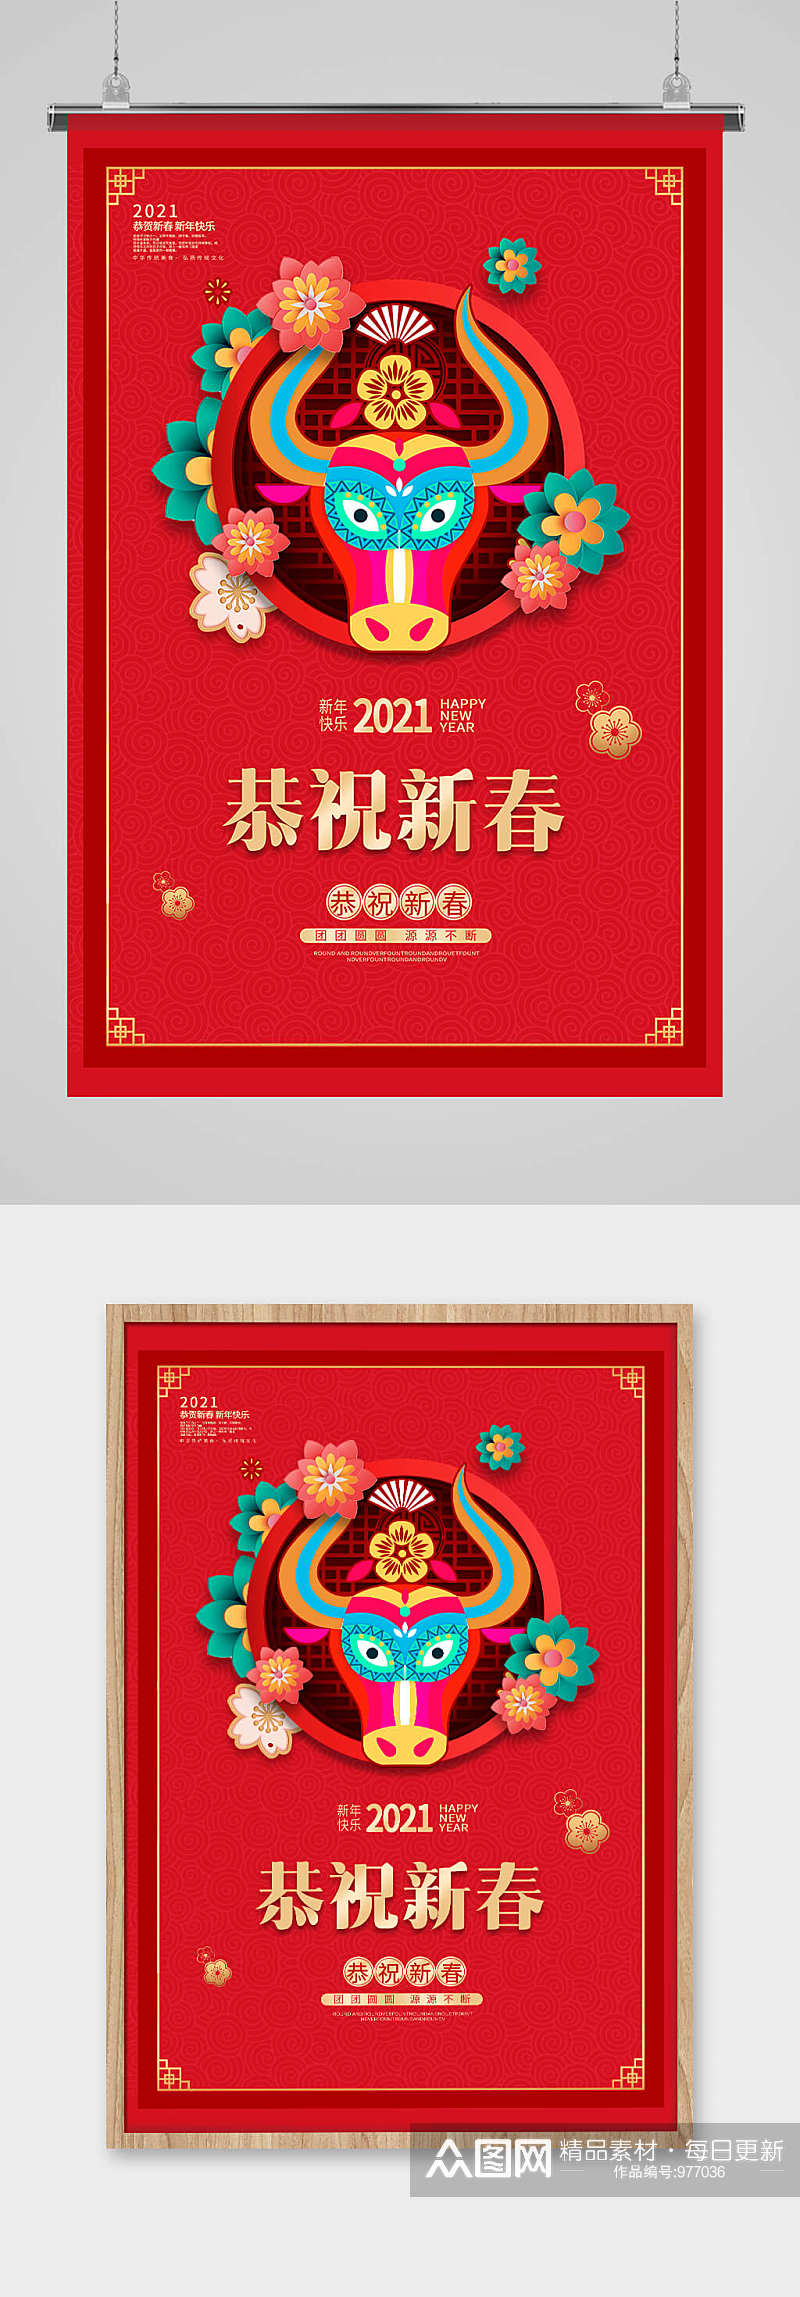 红色剪纸风格喜庆牛年春节新春祝福展示海报素材